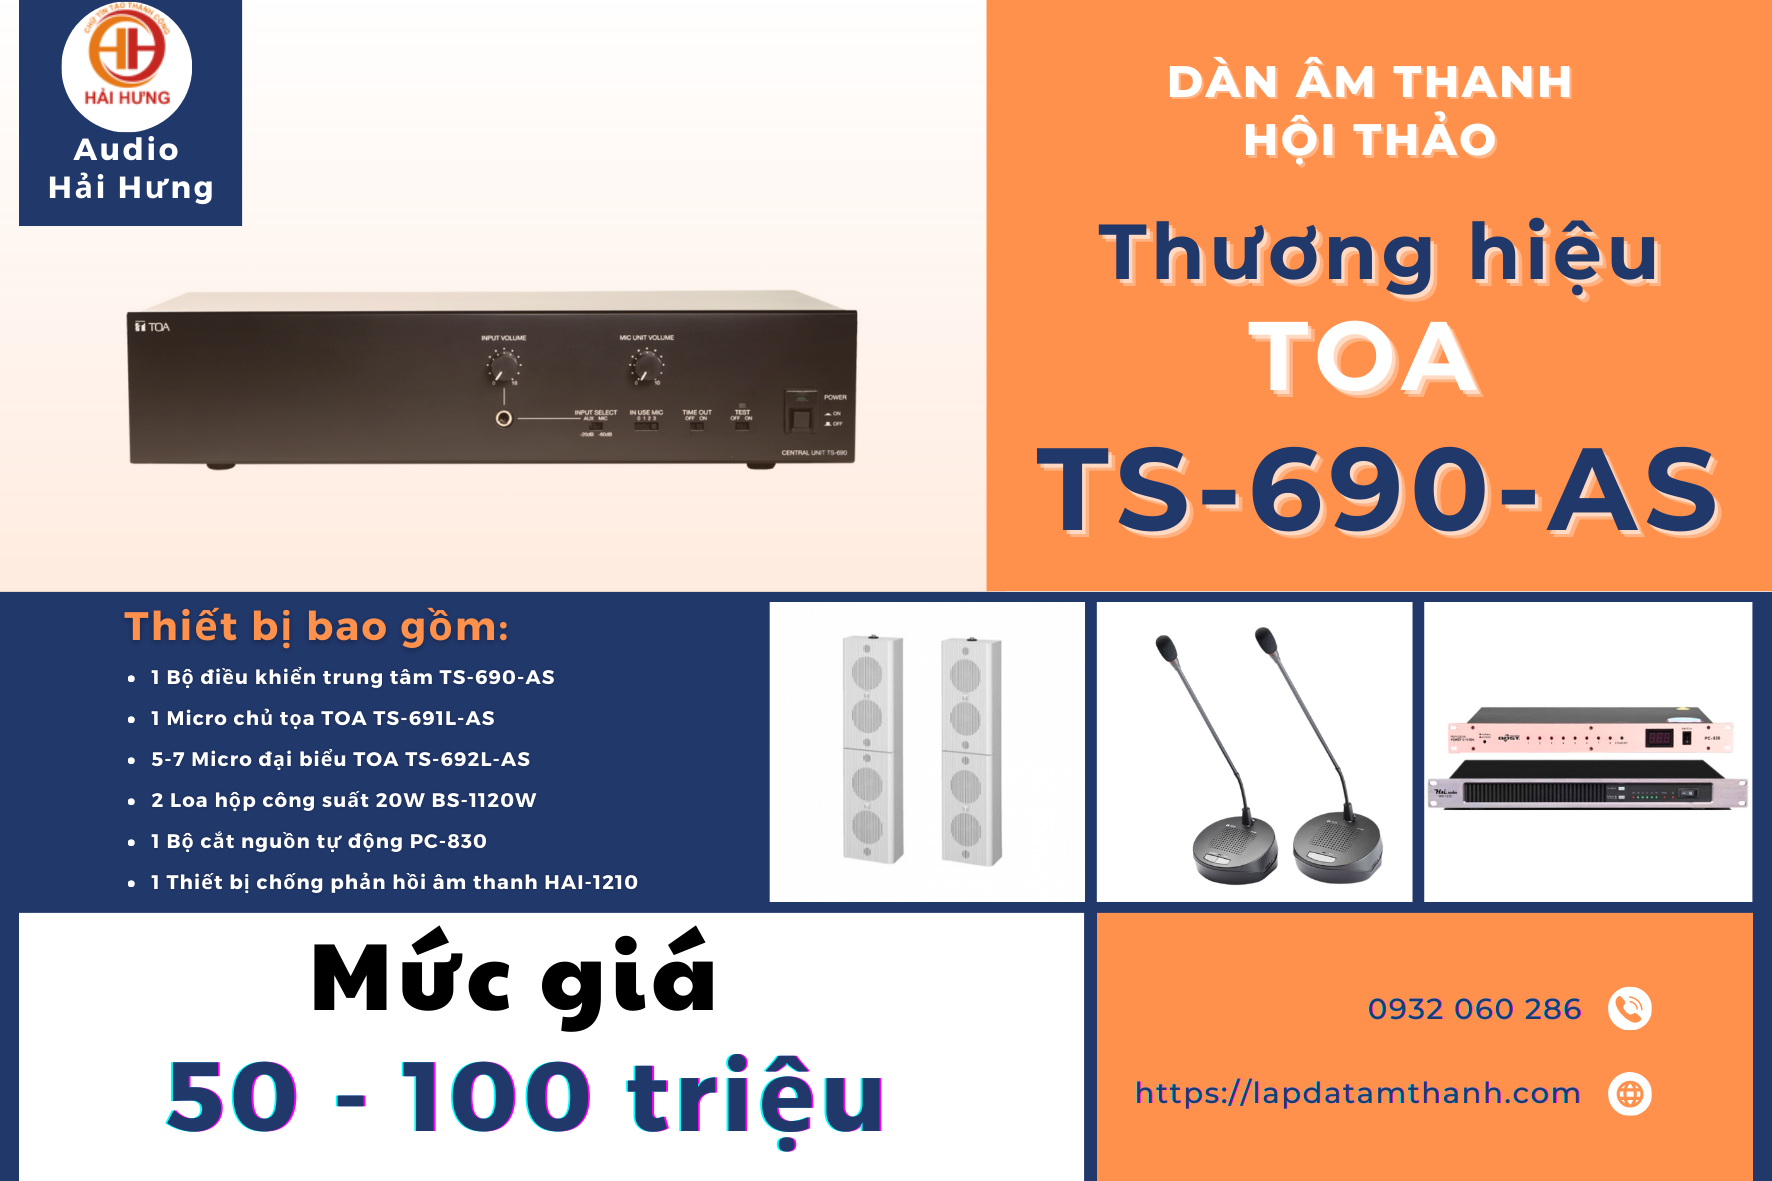 Hệ thống dàn âm thanh hội thảo TOA TS-690-AS có mức giá từ 50 - 100 triệu